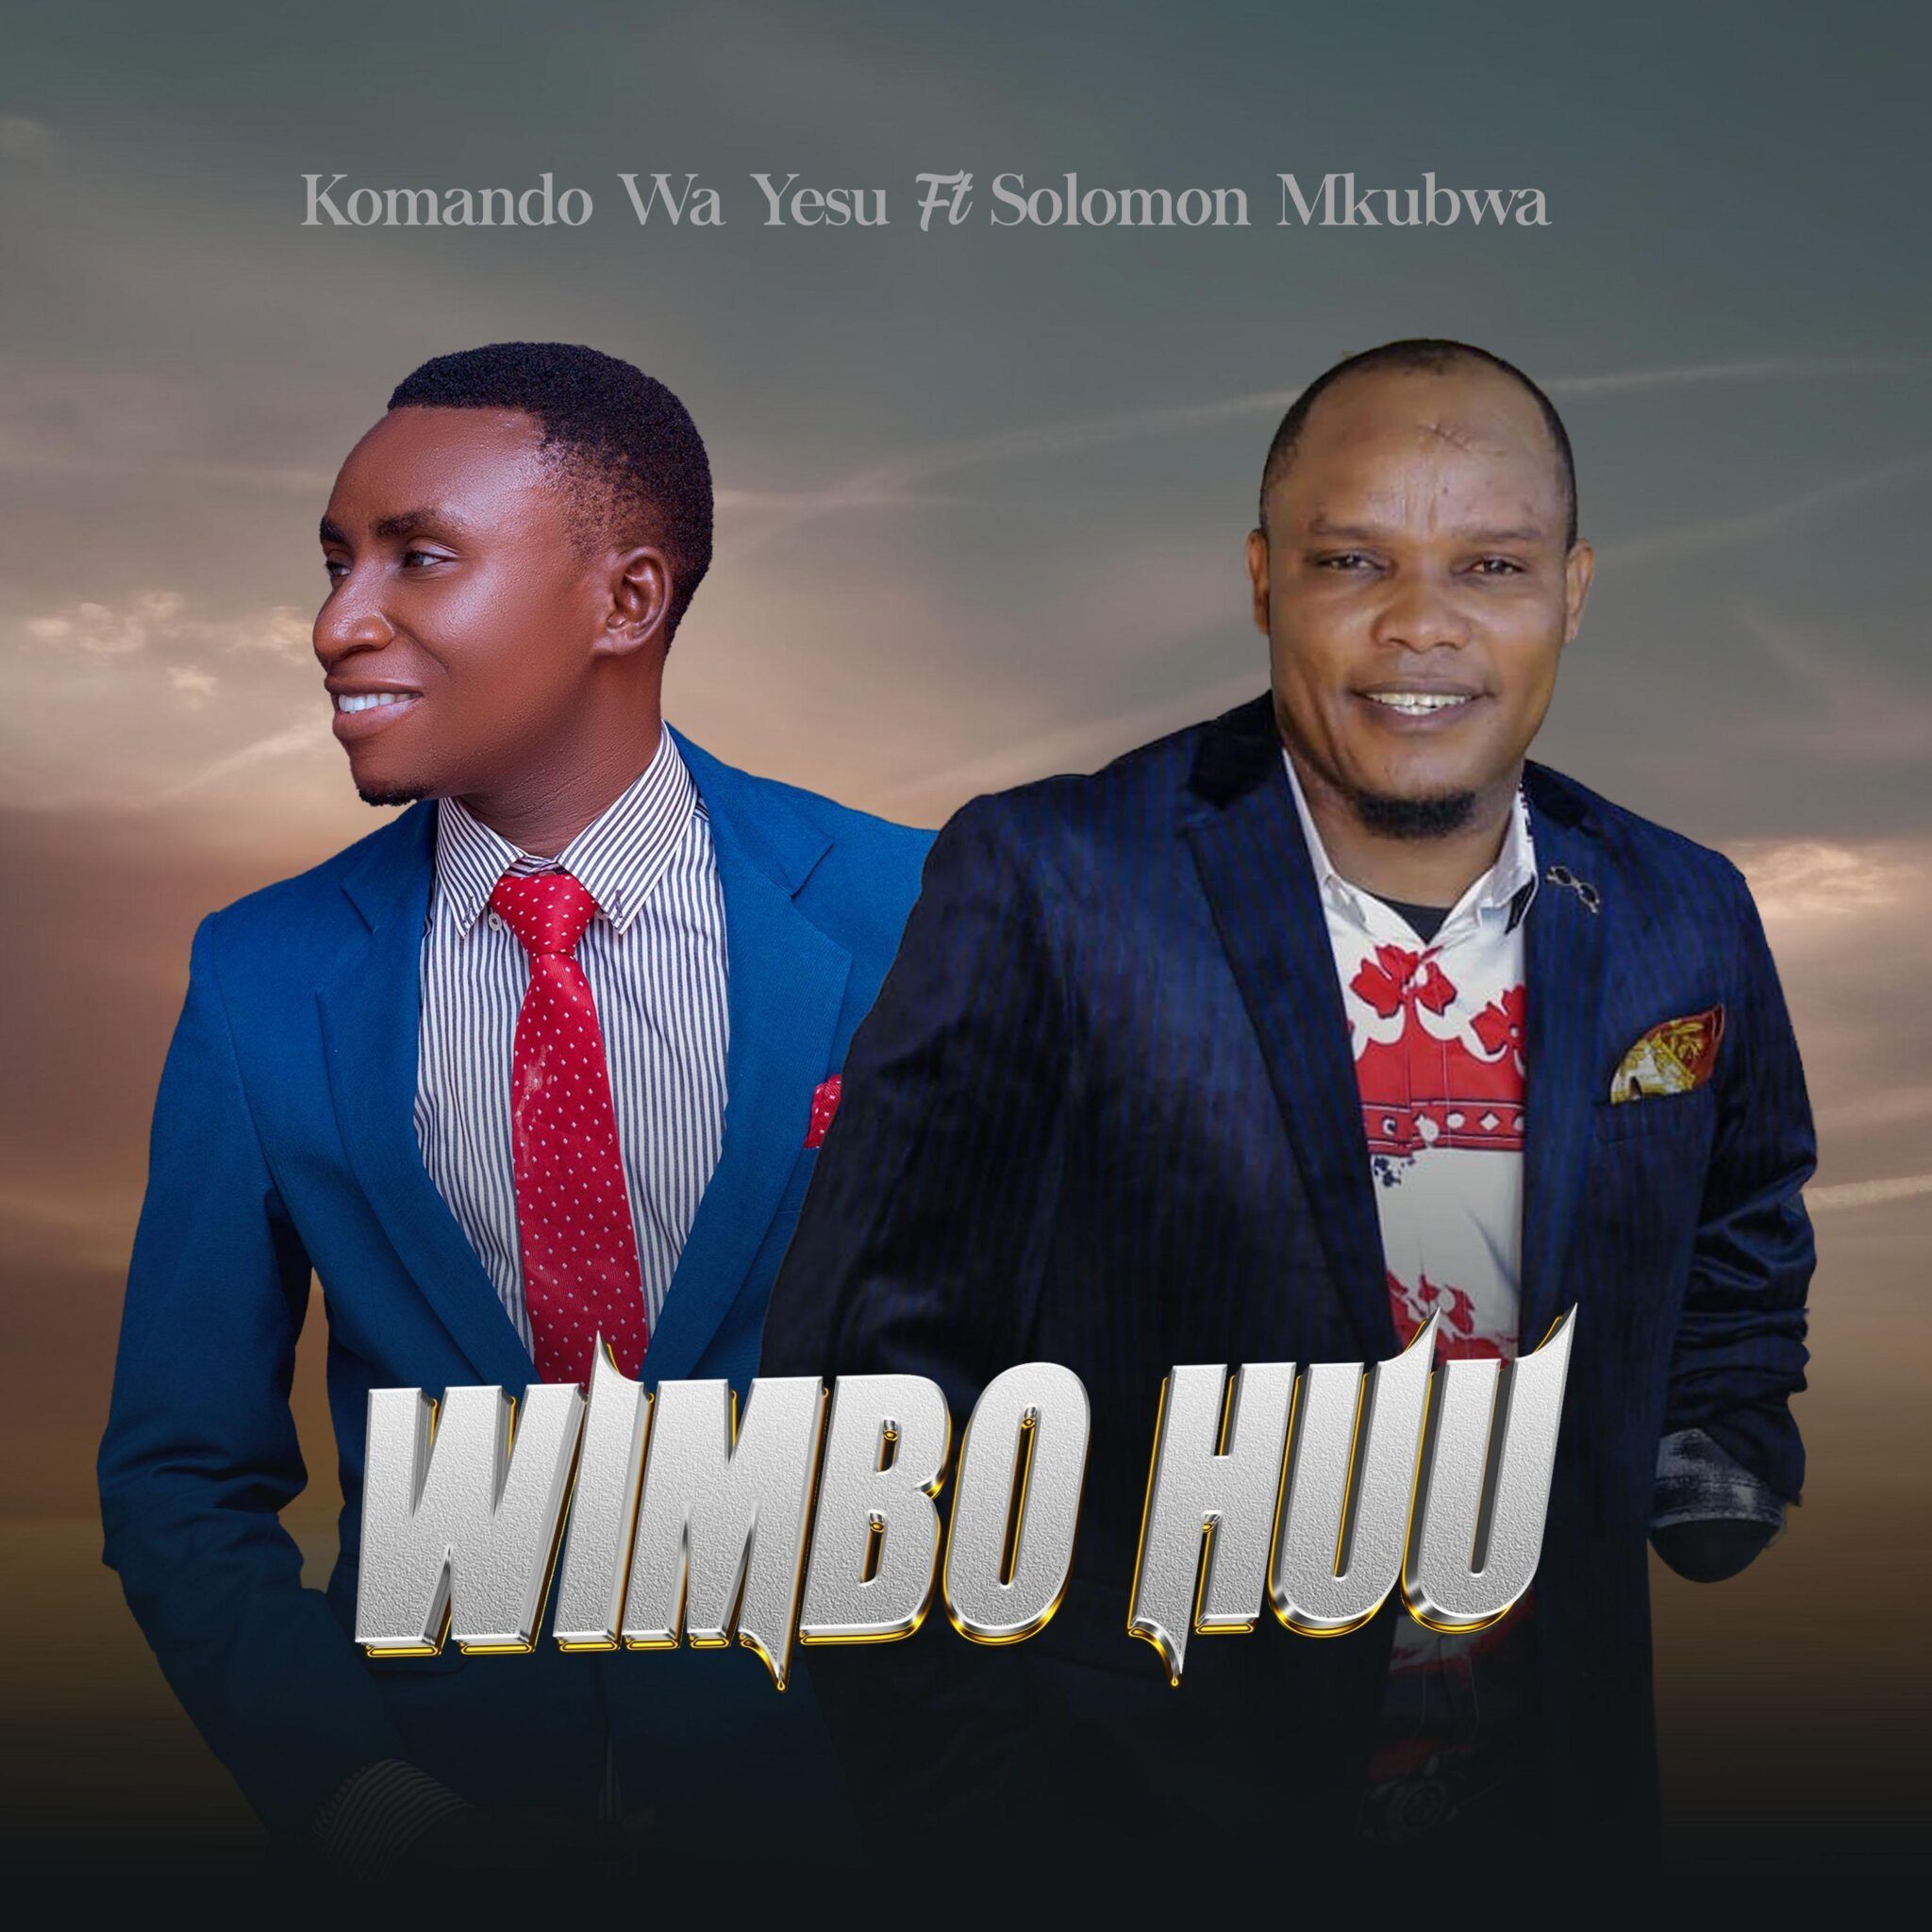 Download Audio Mp3 | Komando Wa Yesu Ft Solomon Mkubwa – Wimbo Huu